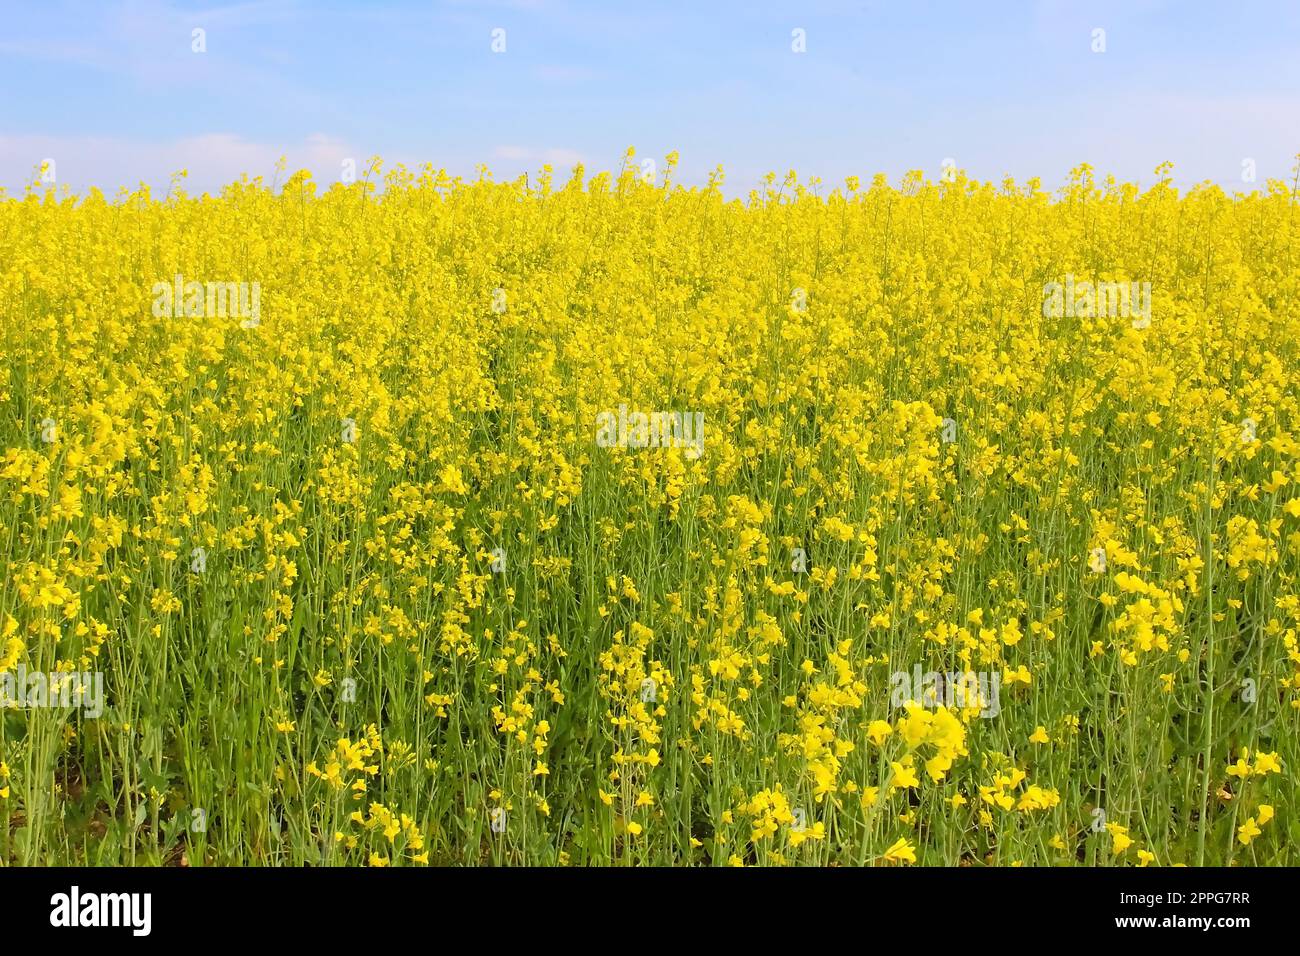 Paesaggio incredibilmente bello con campi di grano saraceno in fiore Foto Stock